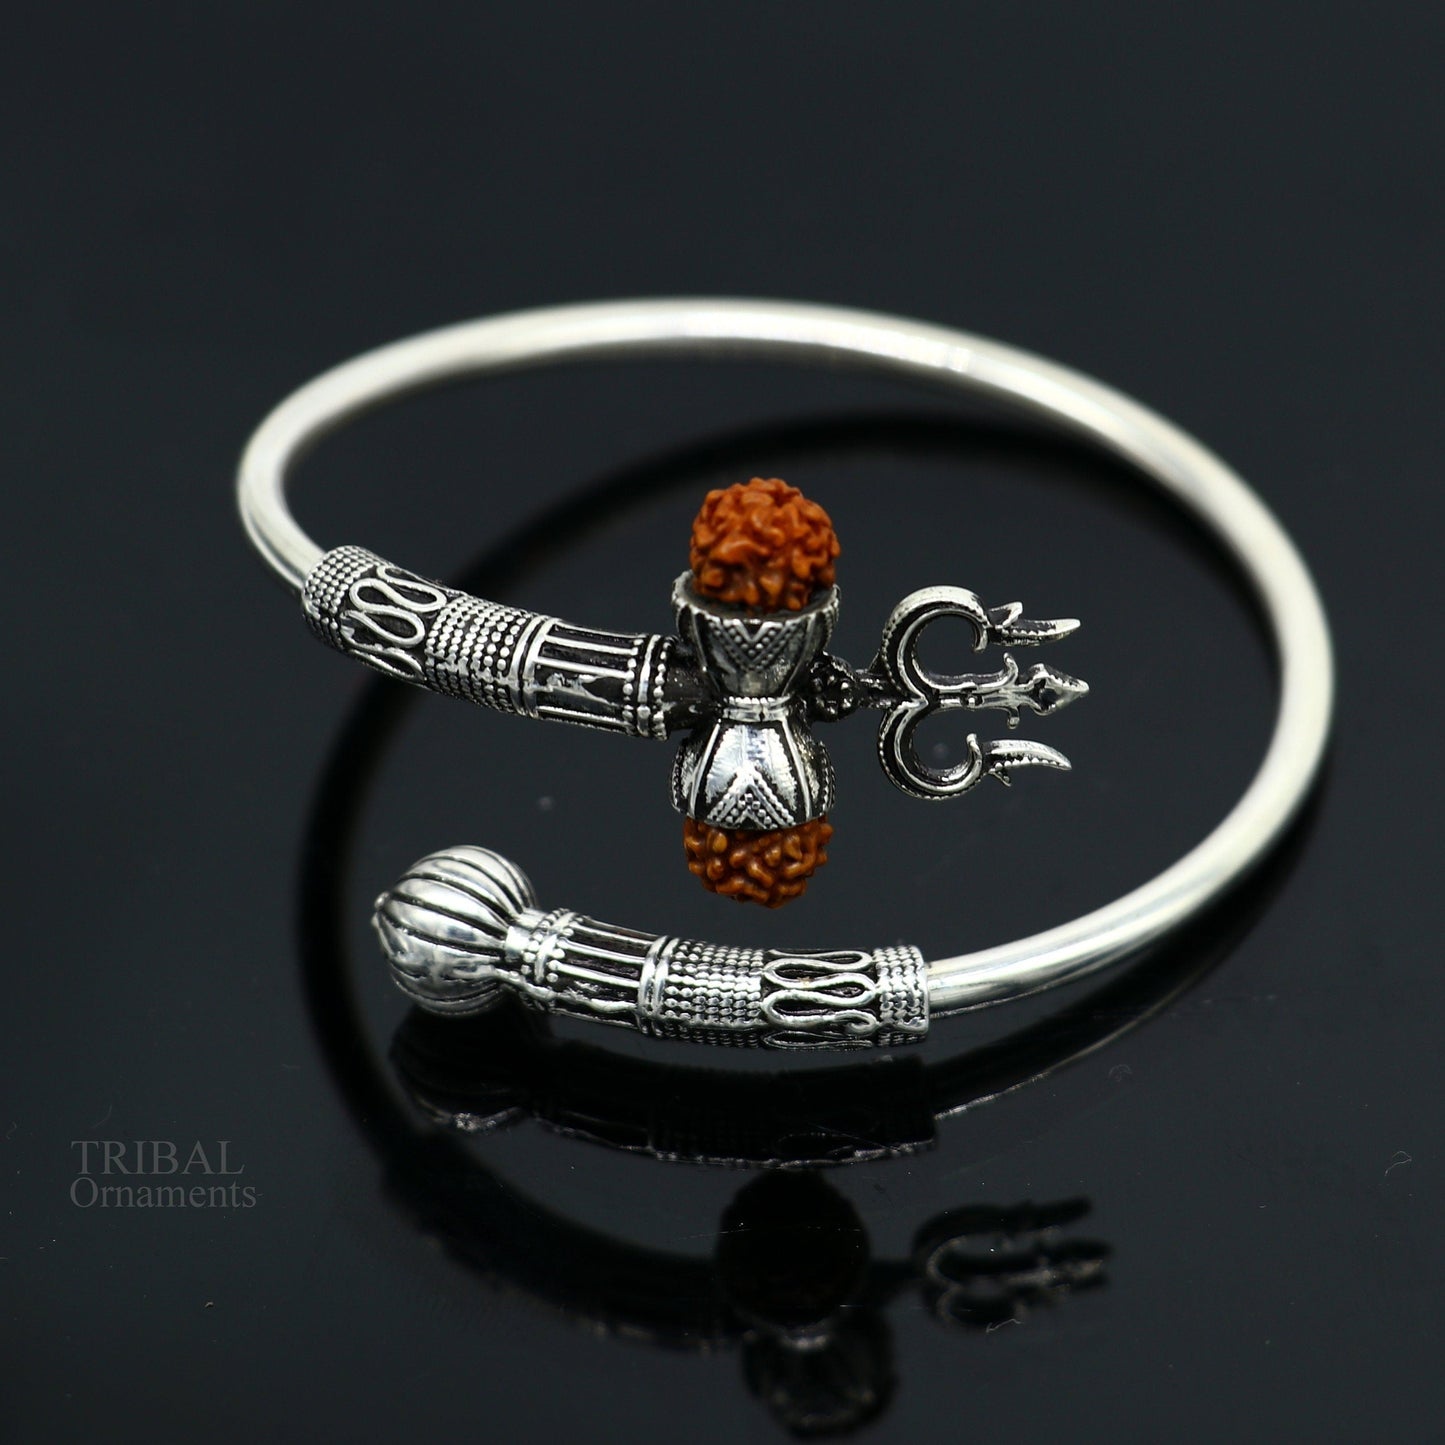 925 sterling silver handmade Shiva Trishul bangle bracelet Rudraksha kada, excellent Bahubali trident kada bracelet gift nsk427 - TRIBAL ORNAMENTS